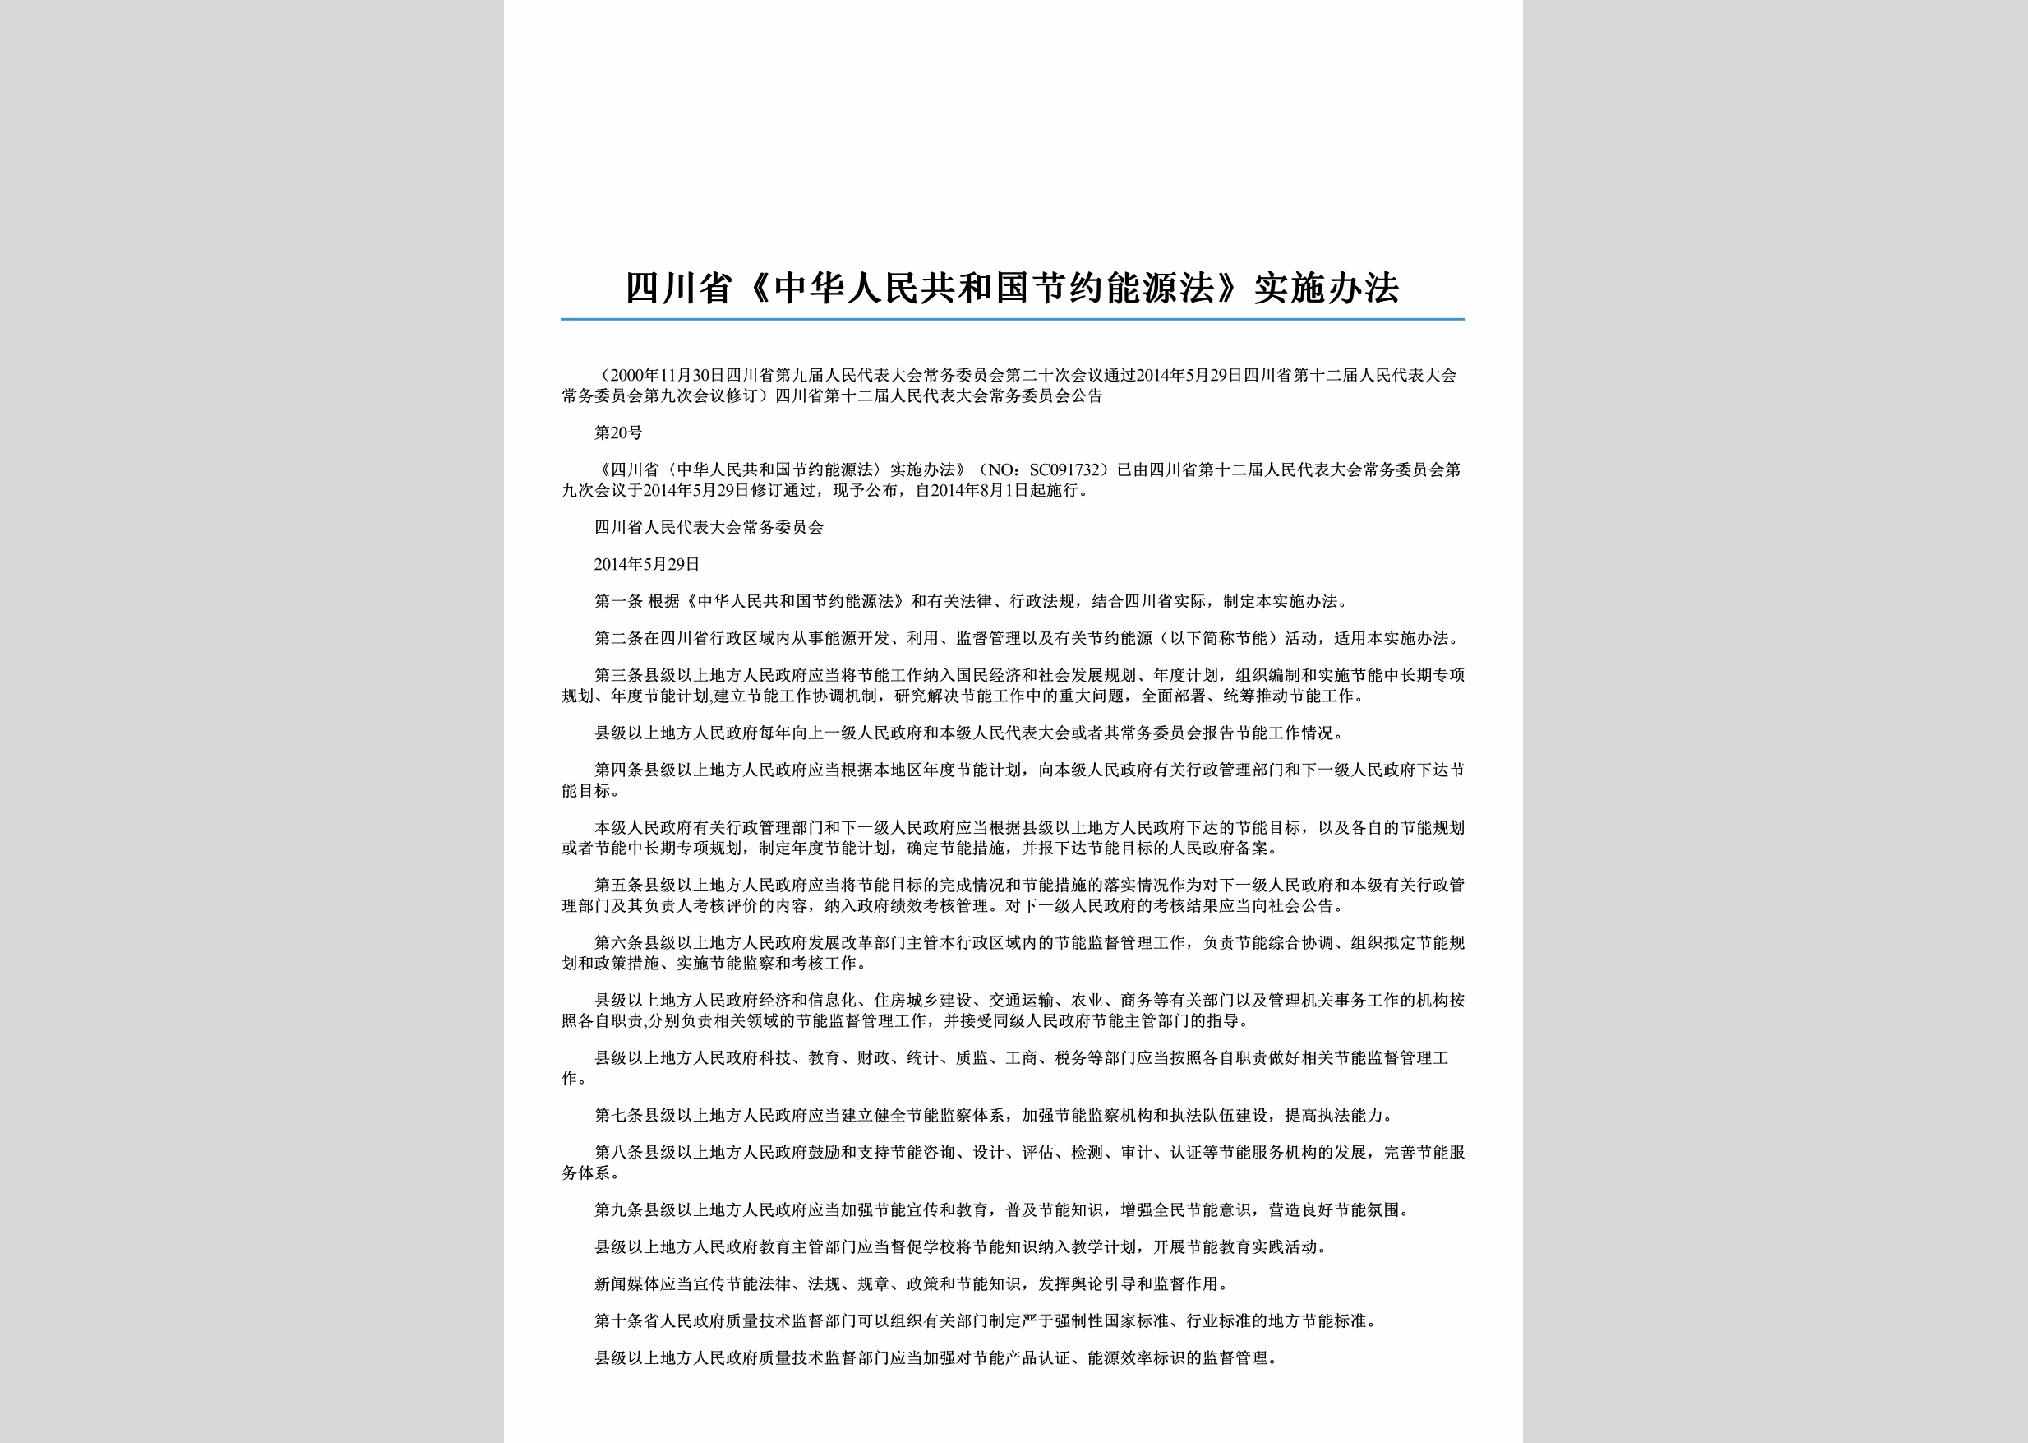 SC-JYNYSSBF-2014：四川省《中华人民共和国节约能源法》实施办法